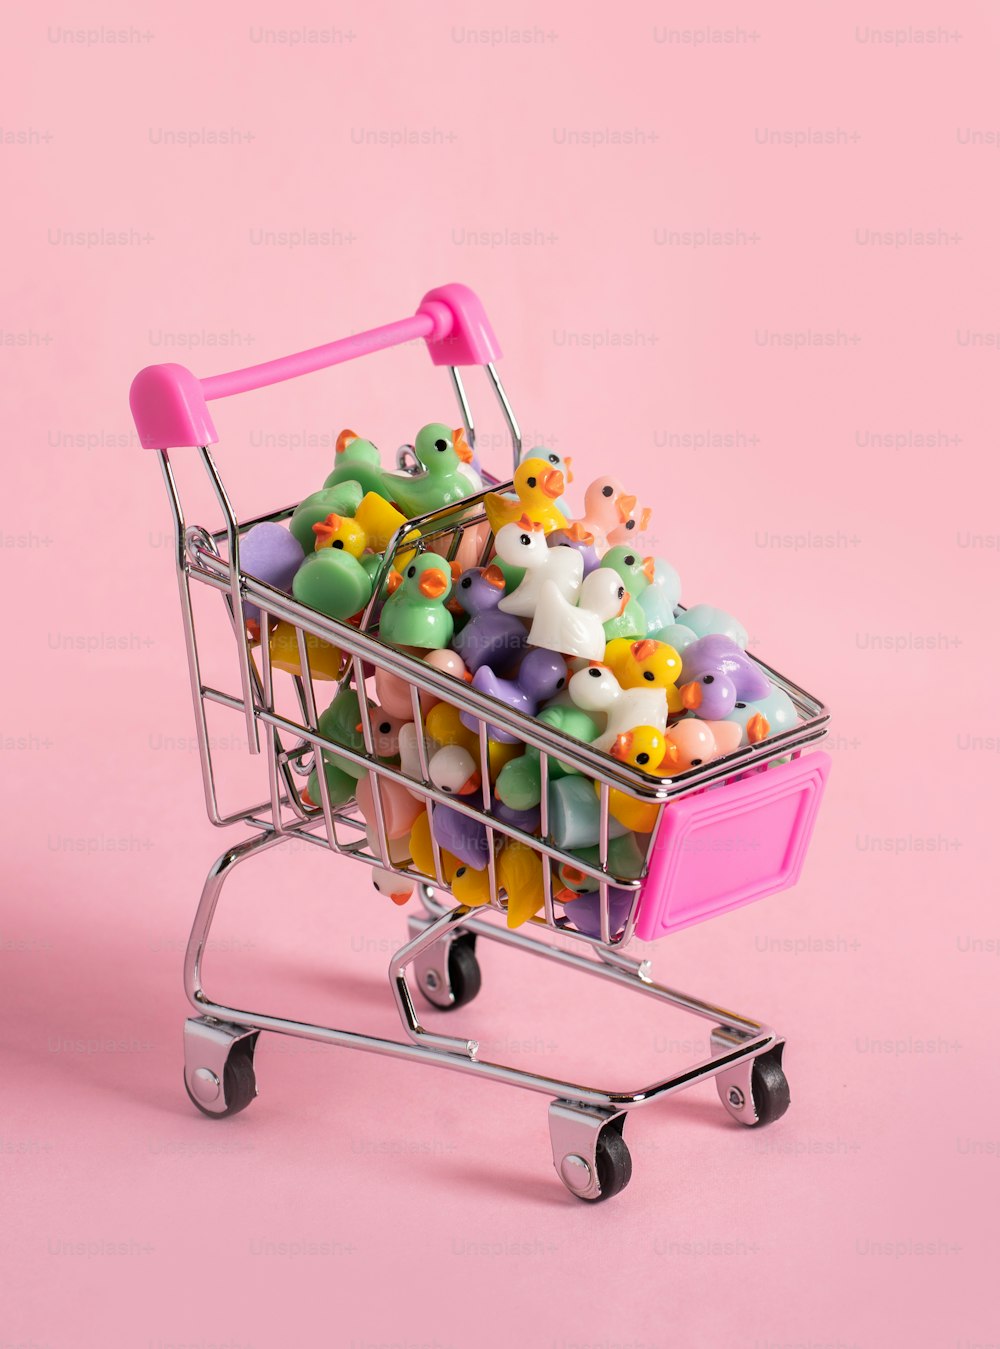 たくさんの小さなおもちゃでいっぱいのショッピングカート